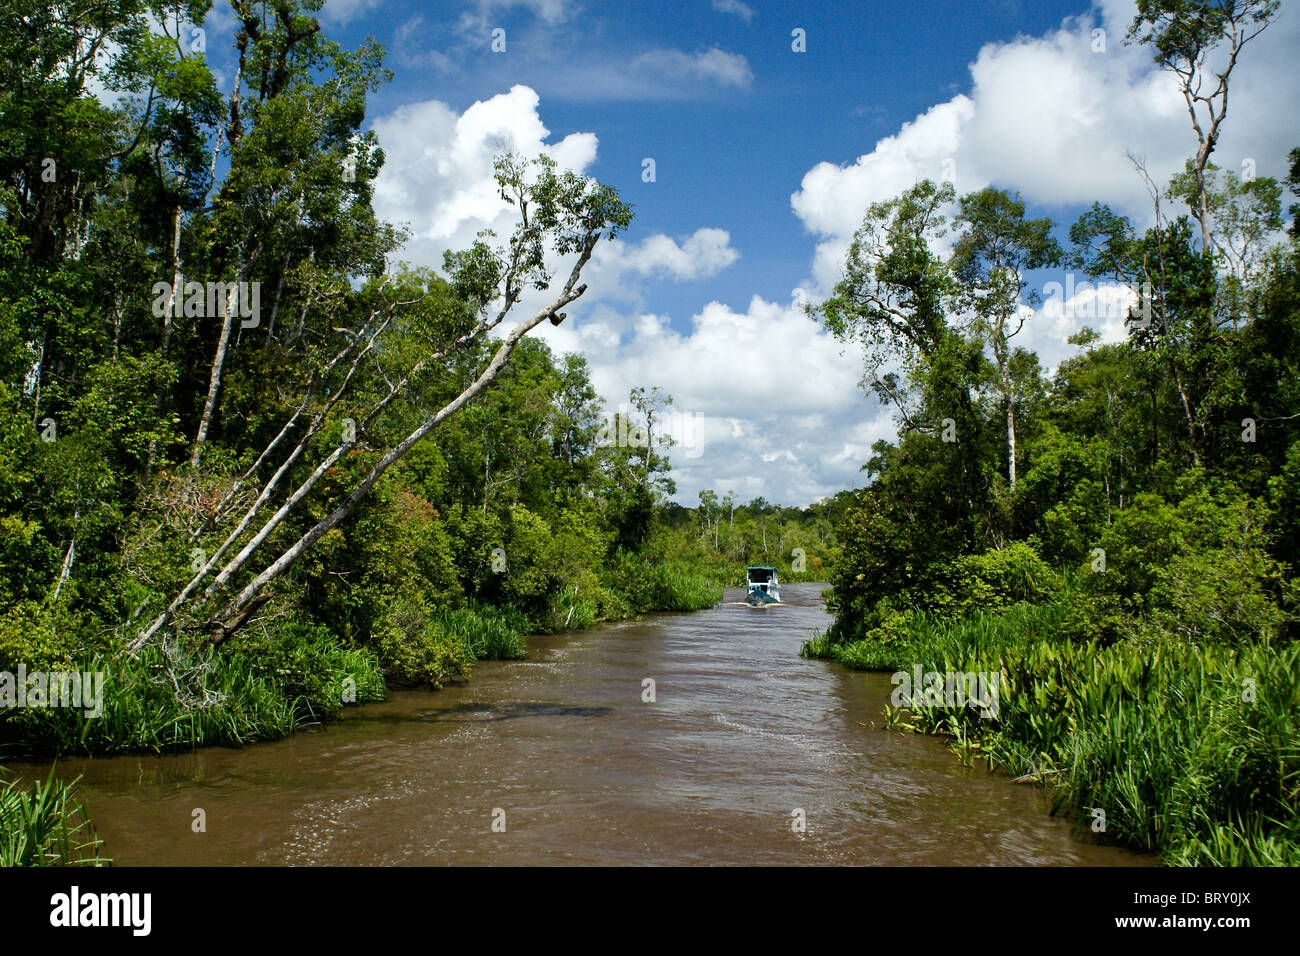 Klotok on Sekonyer River, Borneo, Indonesia Stock Photo